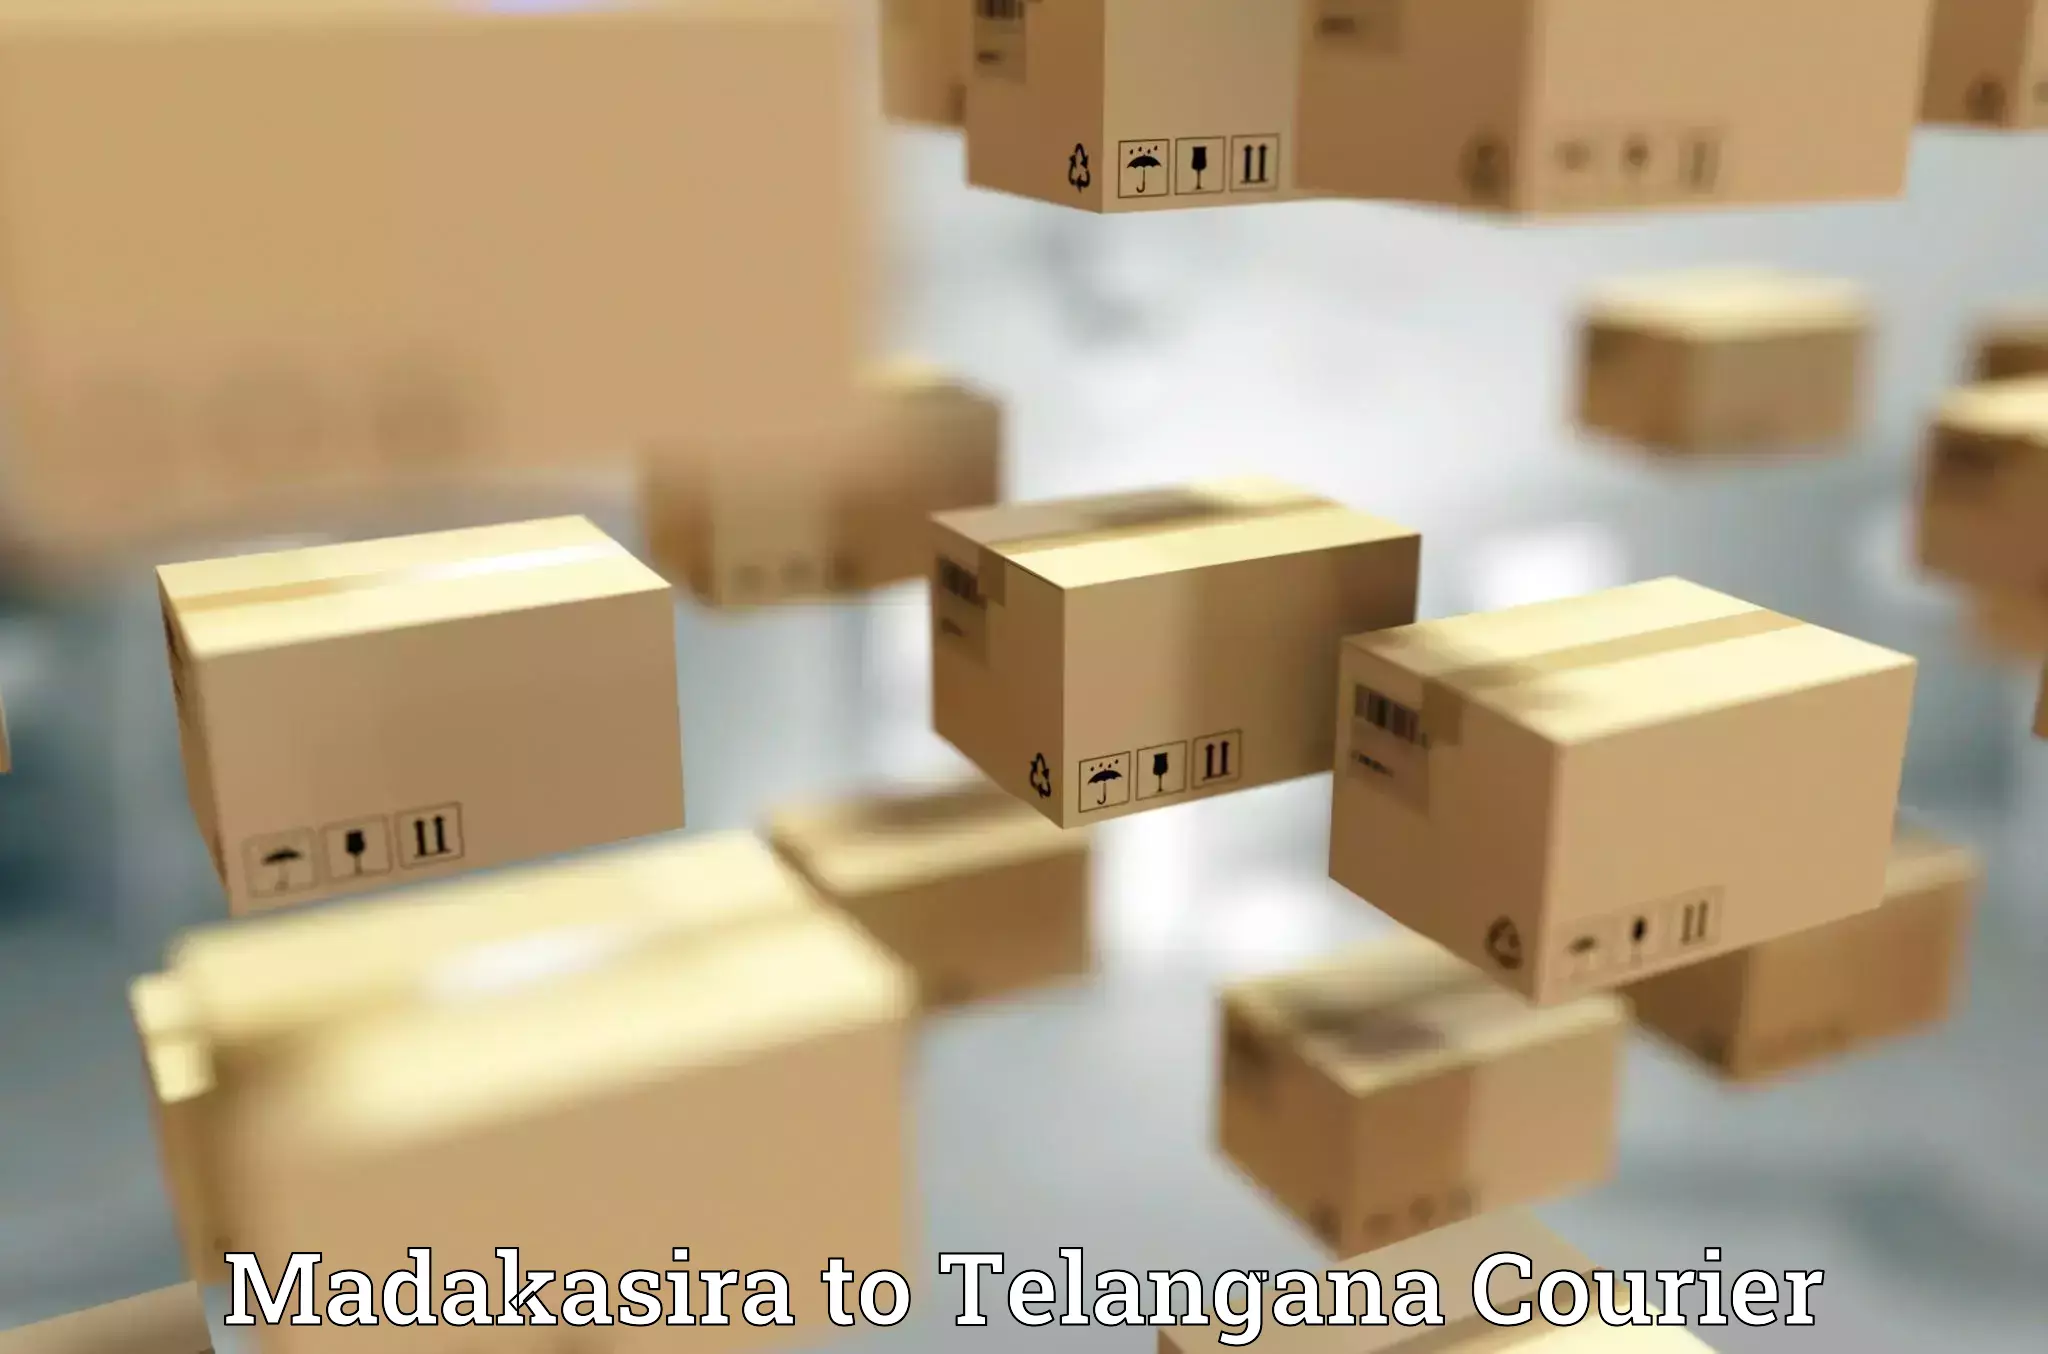 Digital courier platforms Madakasira to Yellareddy